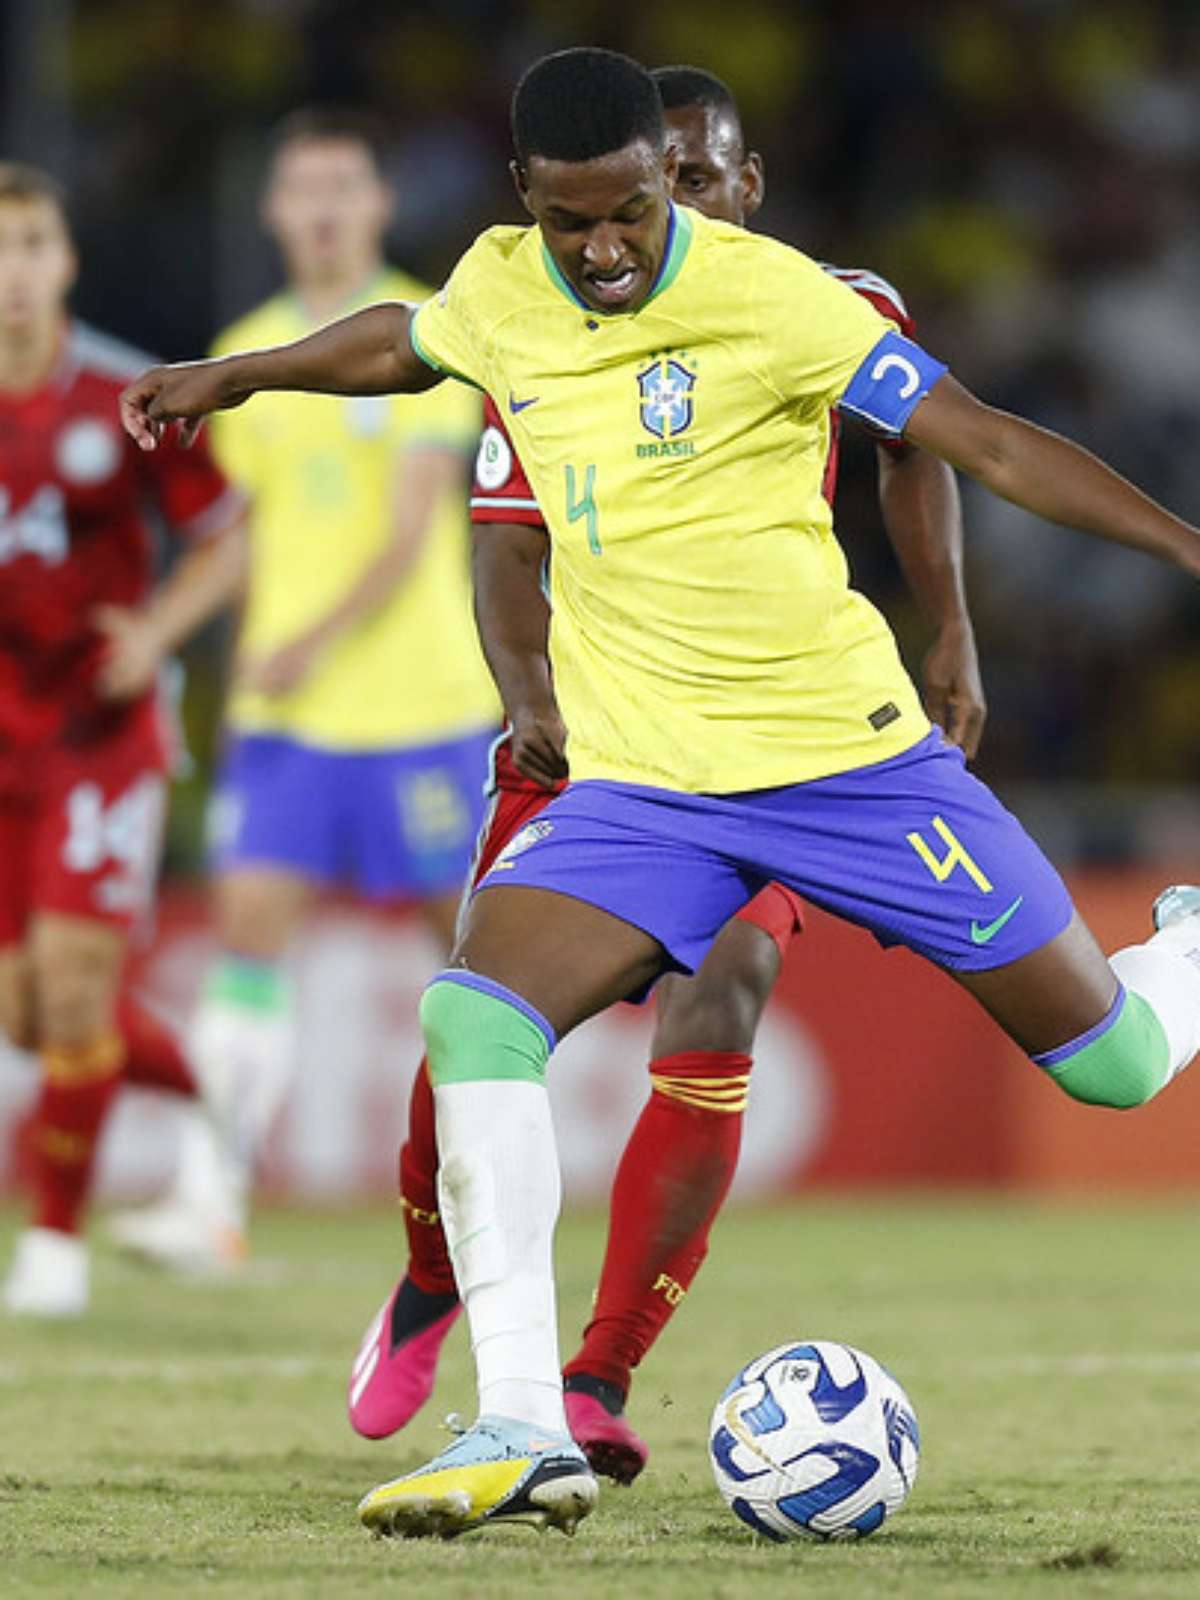 Zagueiro da Seleção Brasileira sub-20 sofre ataques racistas na